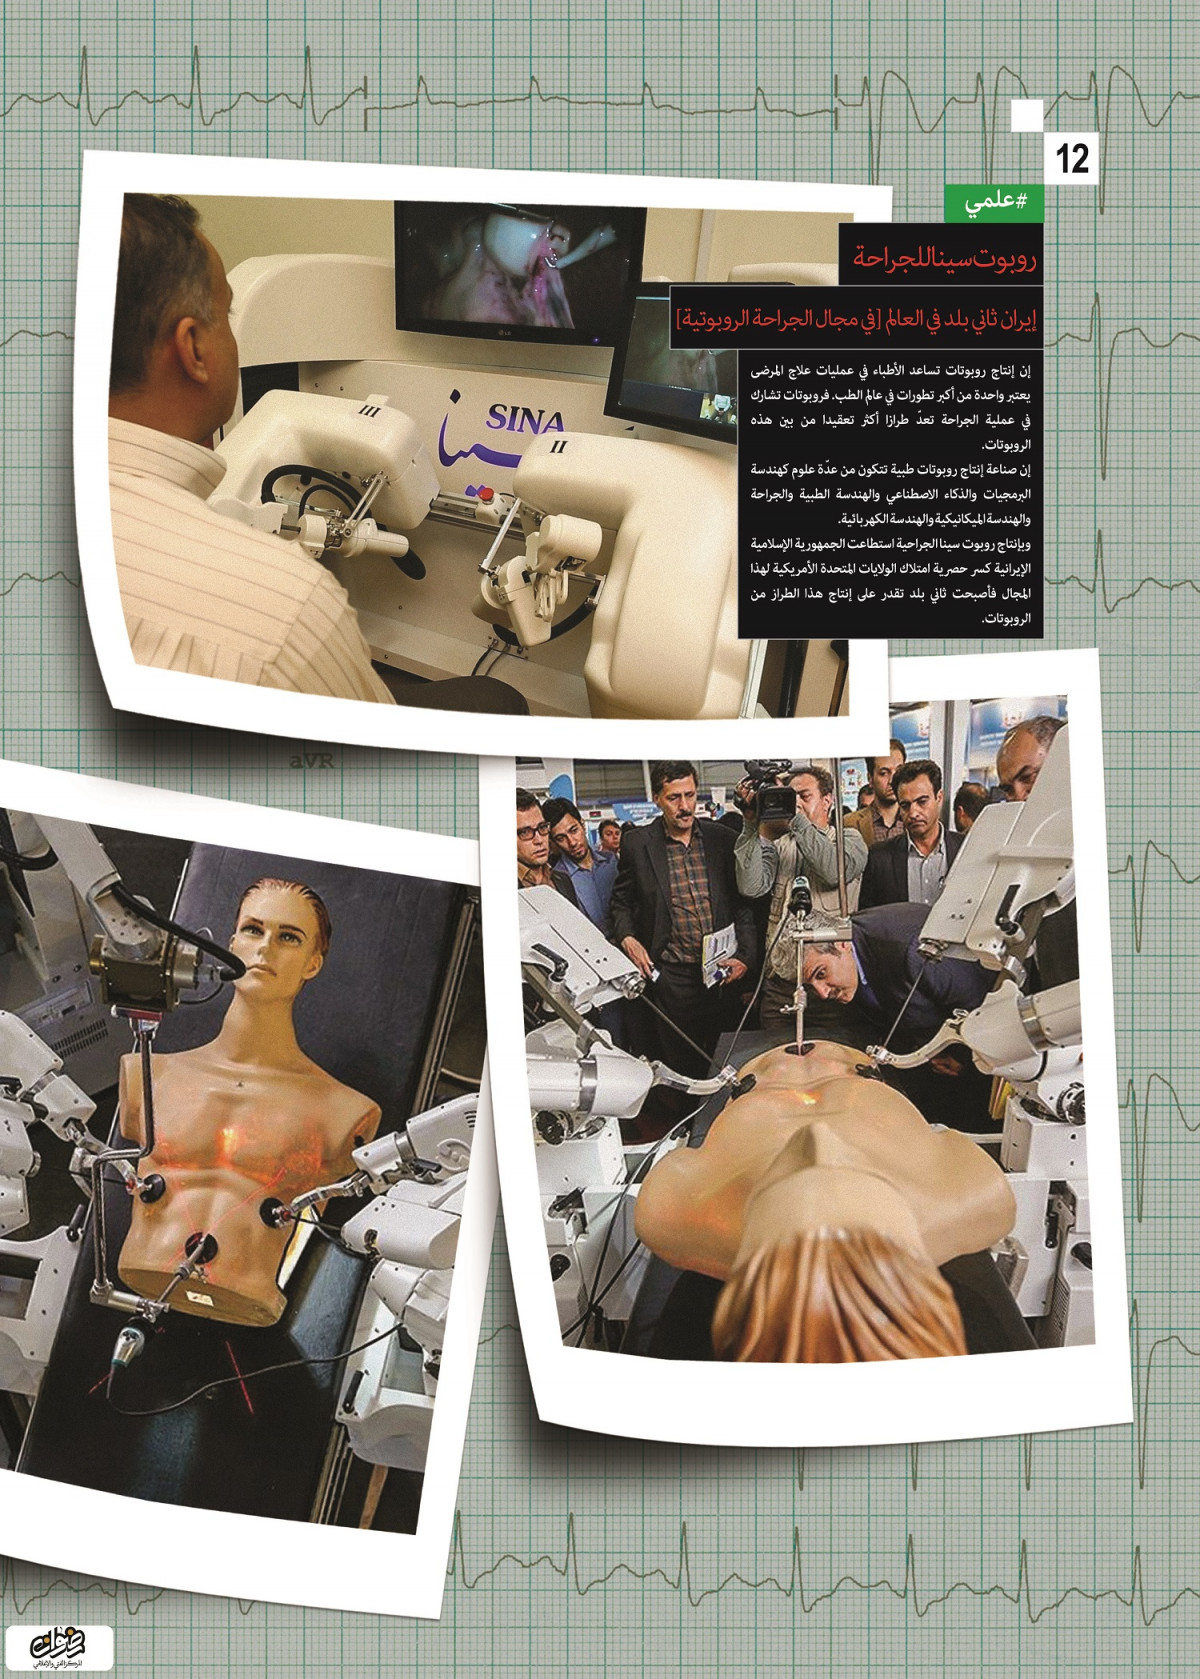 إنجازات العلمية / روبوت سينا للجراحة إيران ثاني بلد في العالم [في مجال الجراحة الروبوتية ]